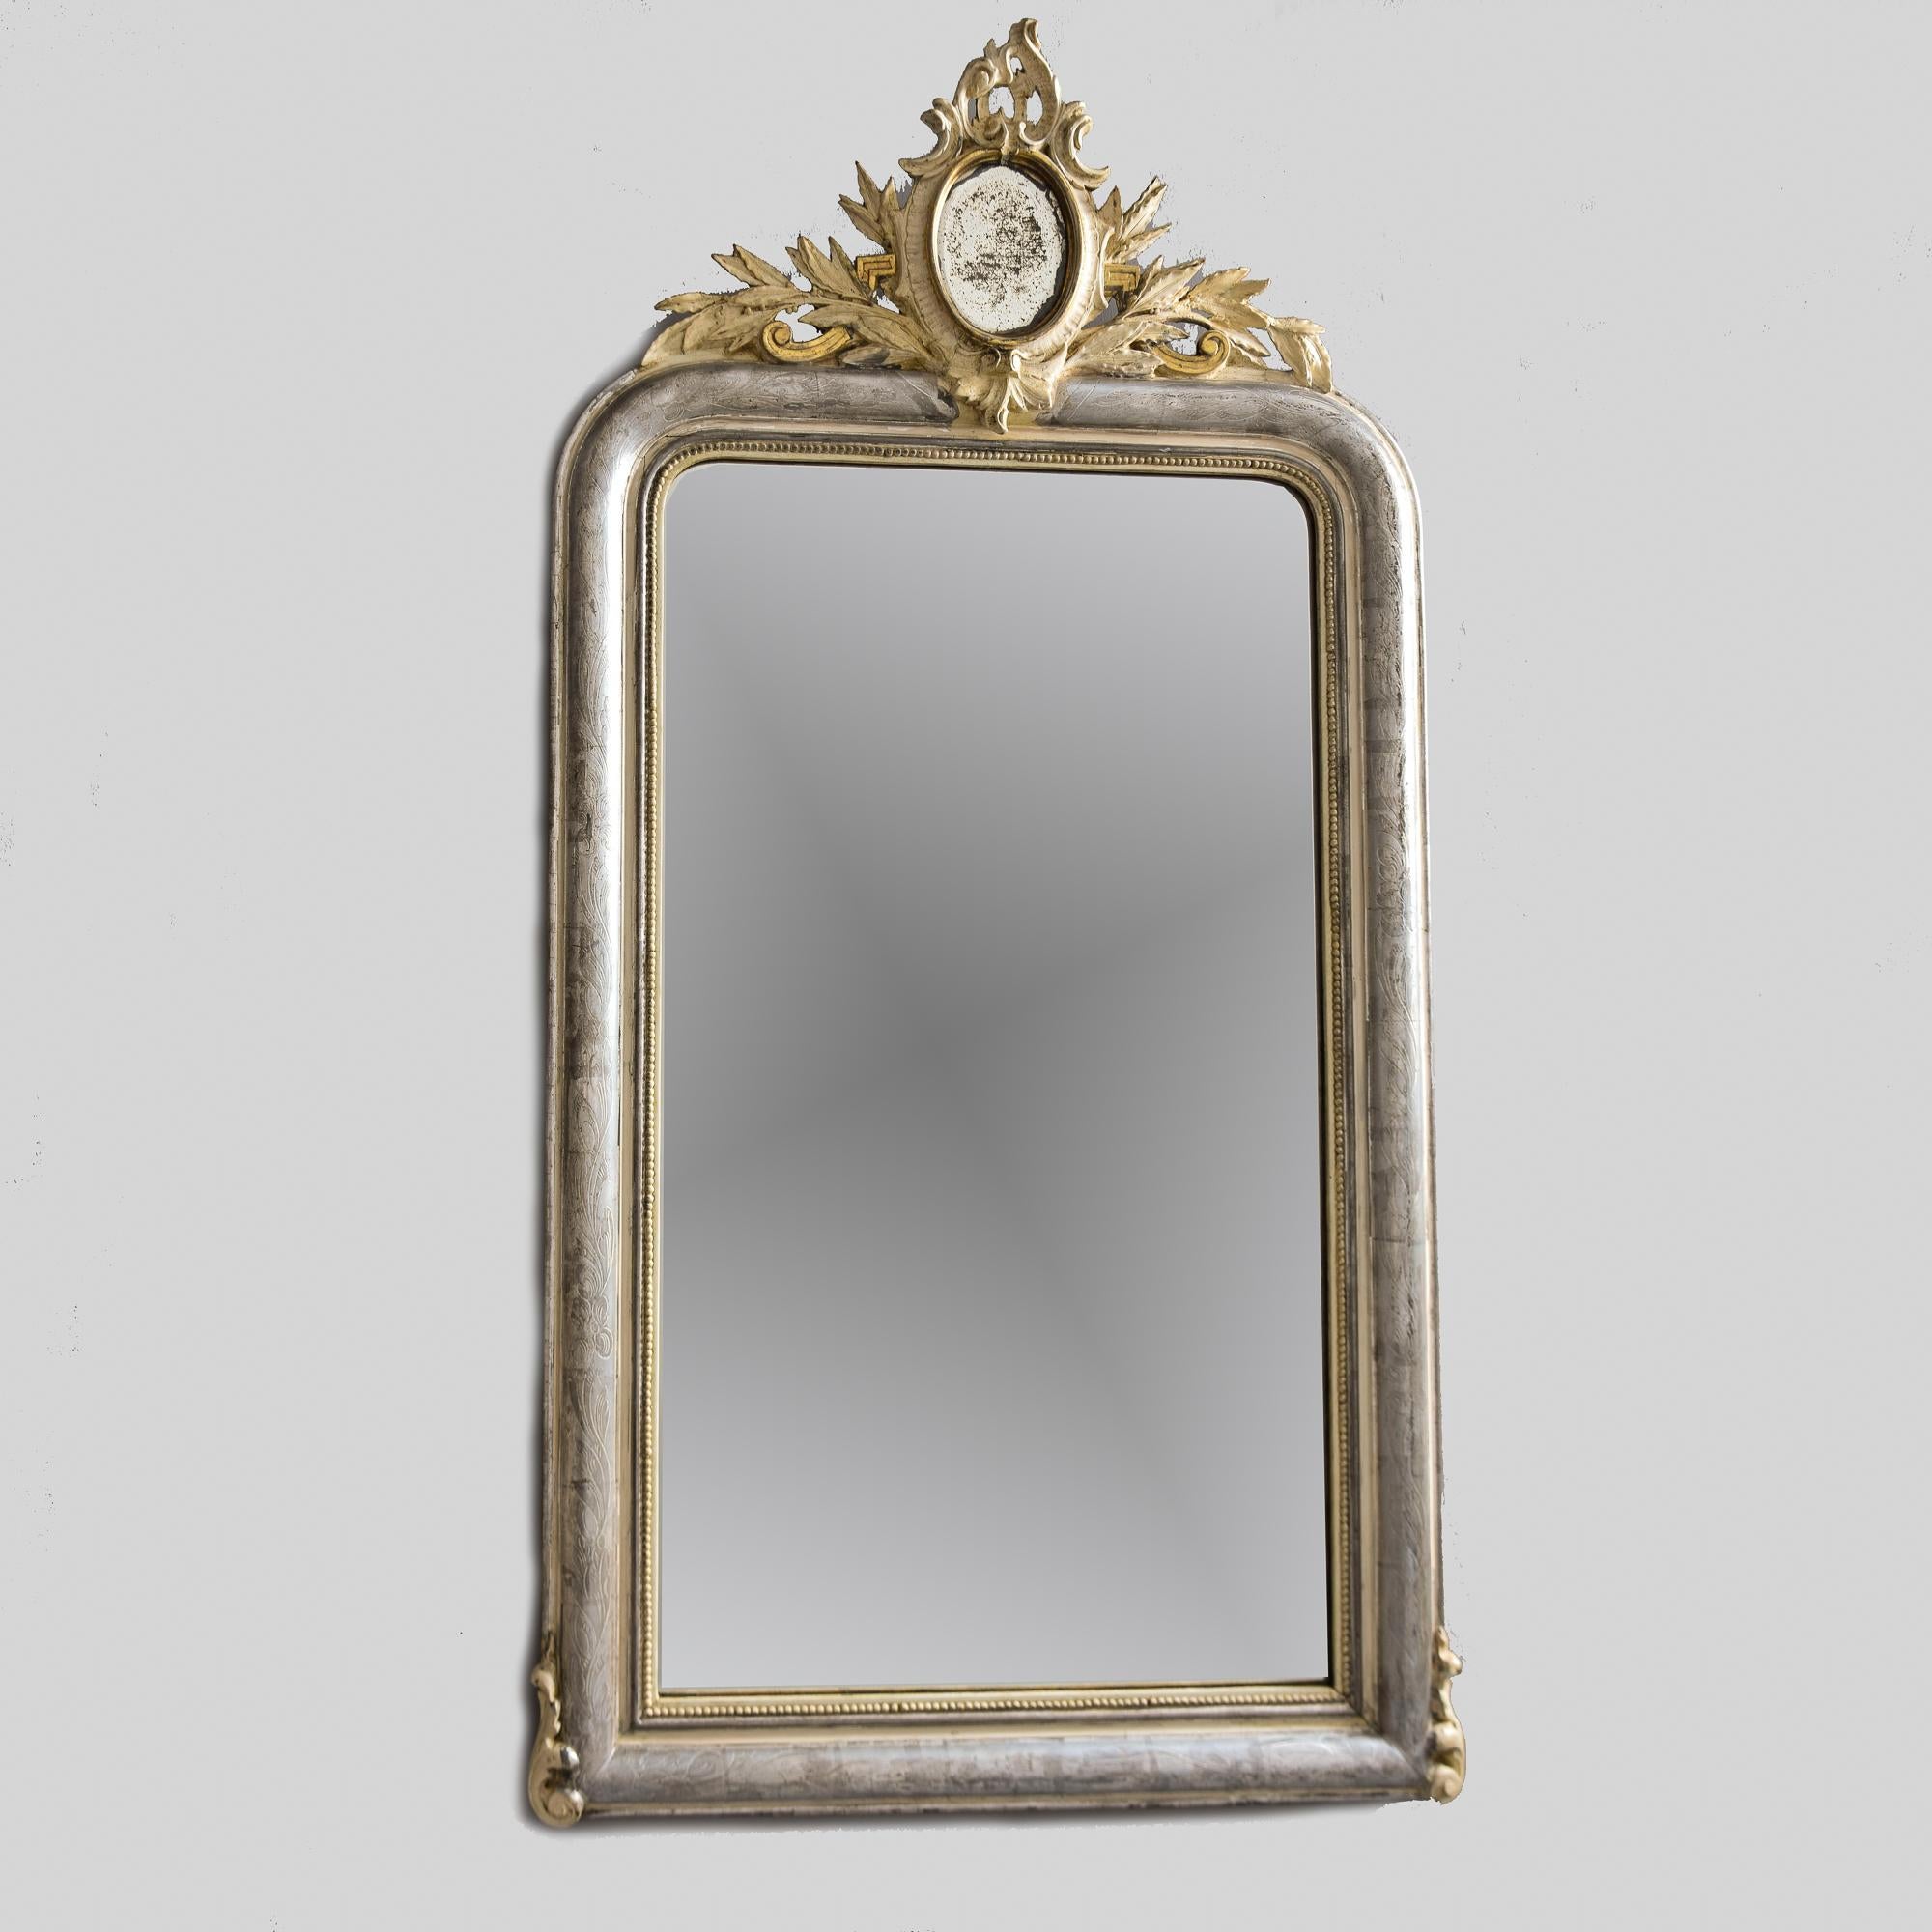 Trouvé en France, ce grand miroir Louis Philippe date des années 1870. Le cadre en argent doré présente un subtil motif gravé de feuilles et de vignes, une garniture perlée contrastante en feuille d'or sur le bord intérieur et une couronne en bois